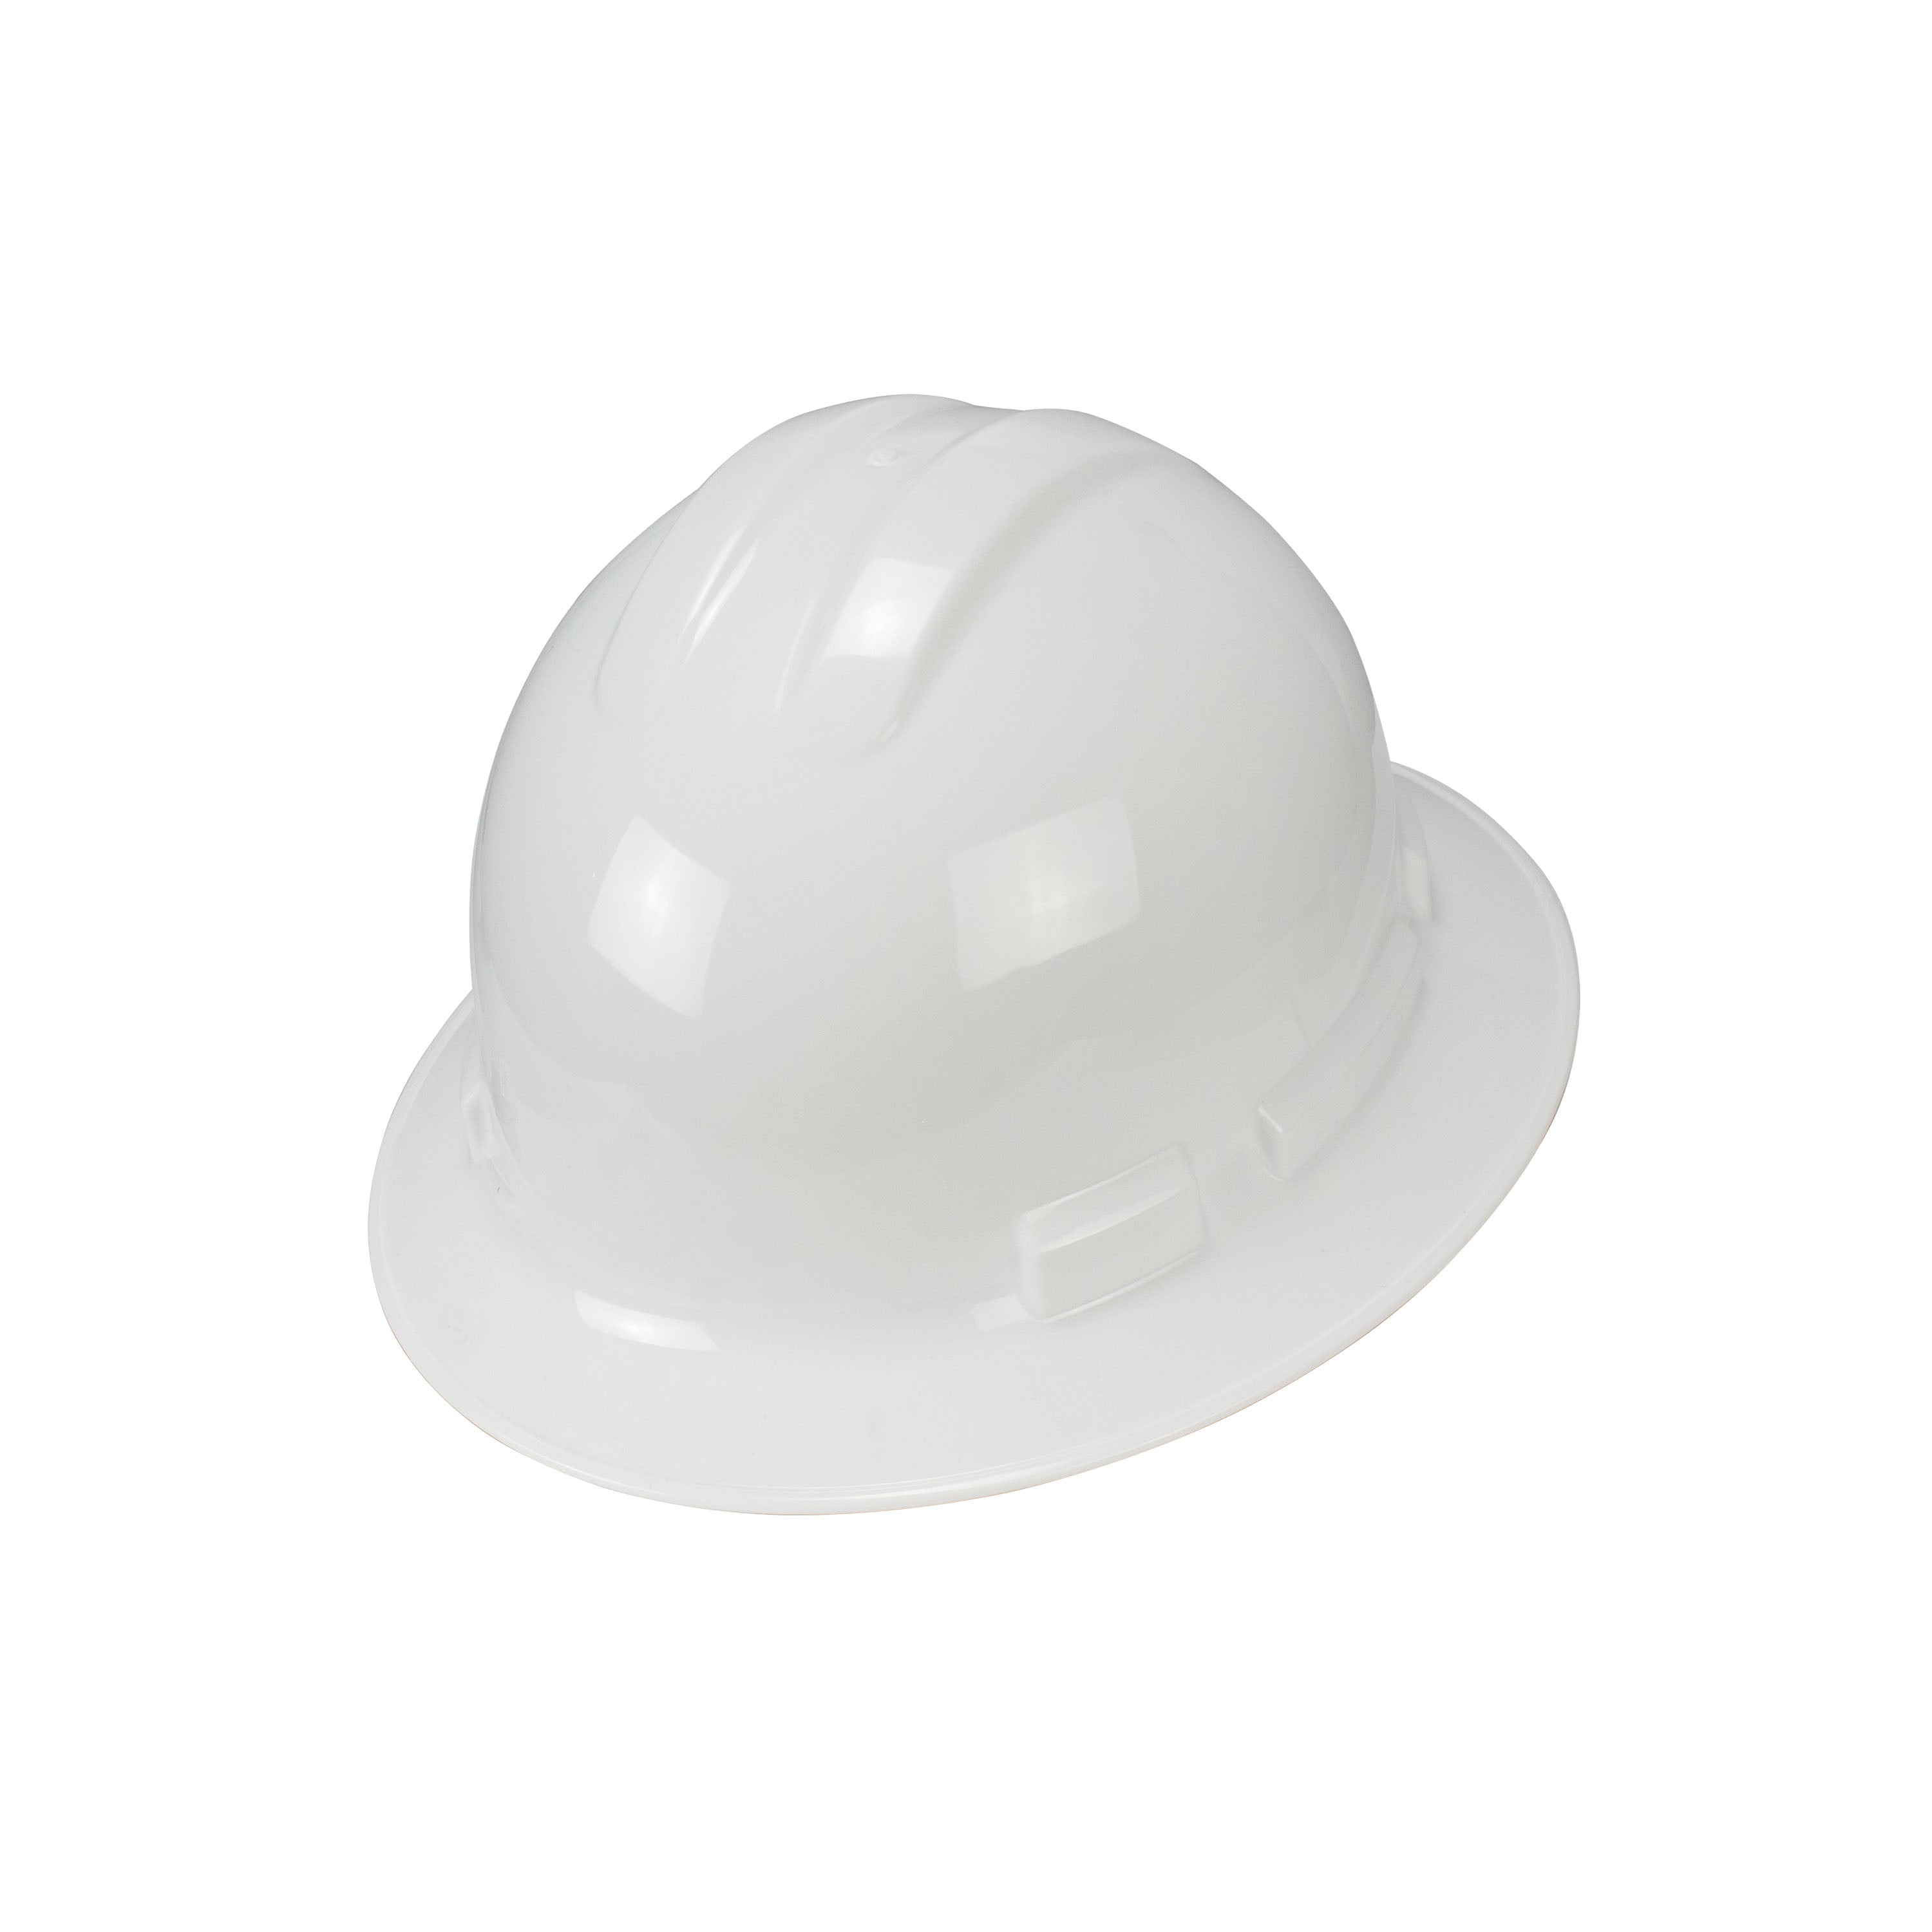 DEWALT DPG11FB Full Brim Hard Hat - White-eSafety Supplies, Inc